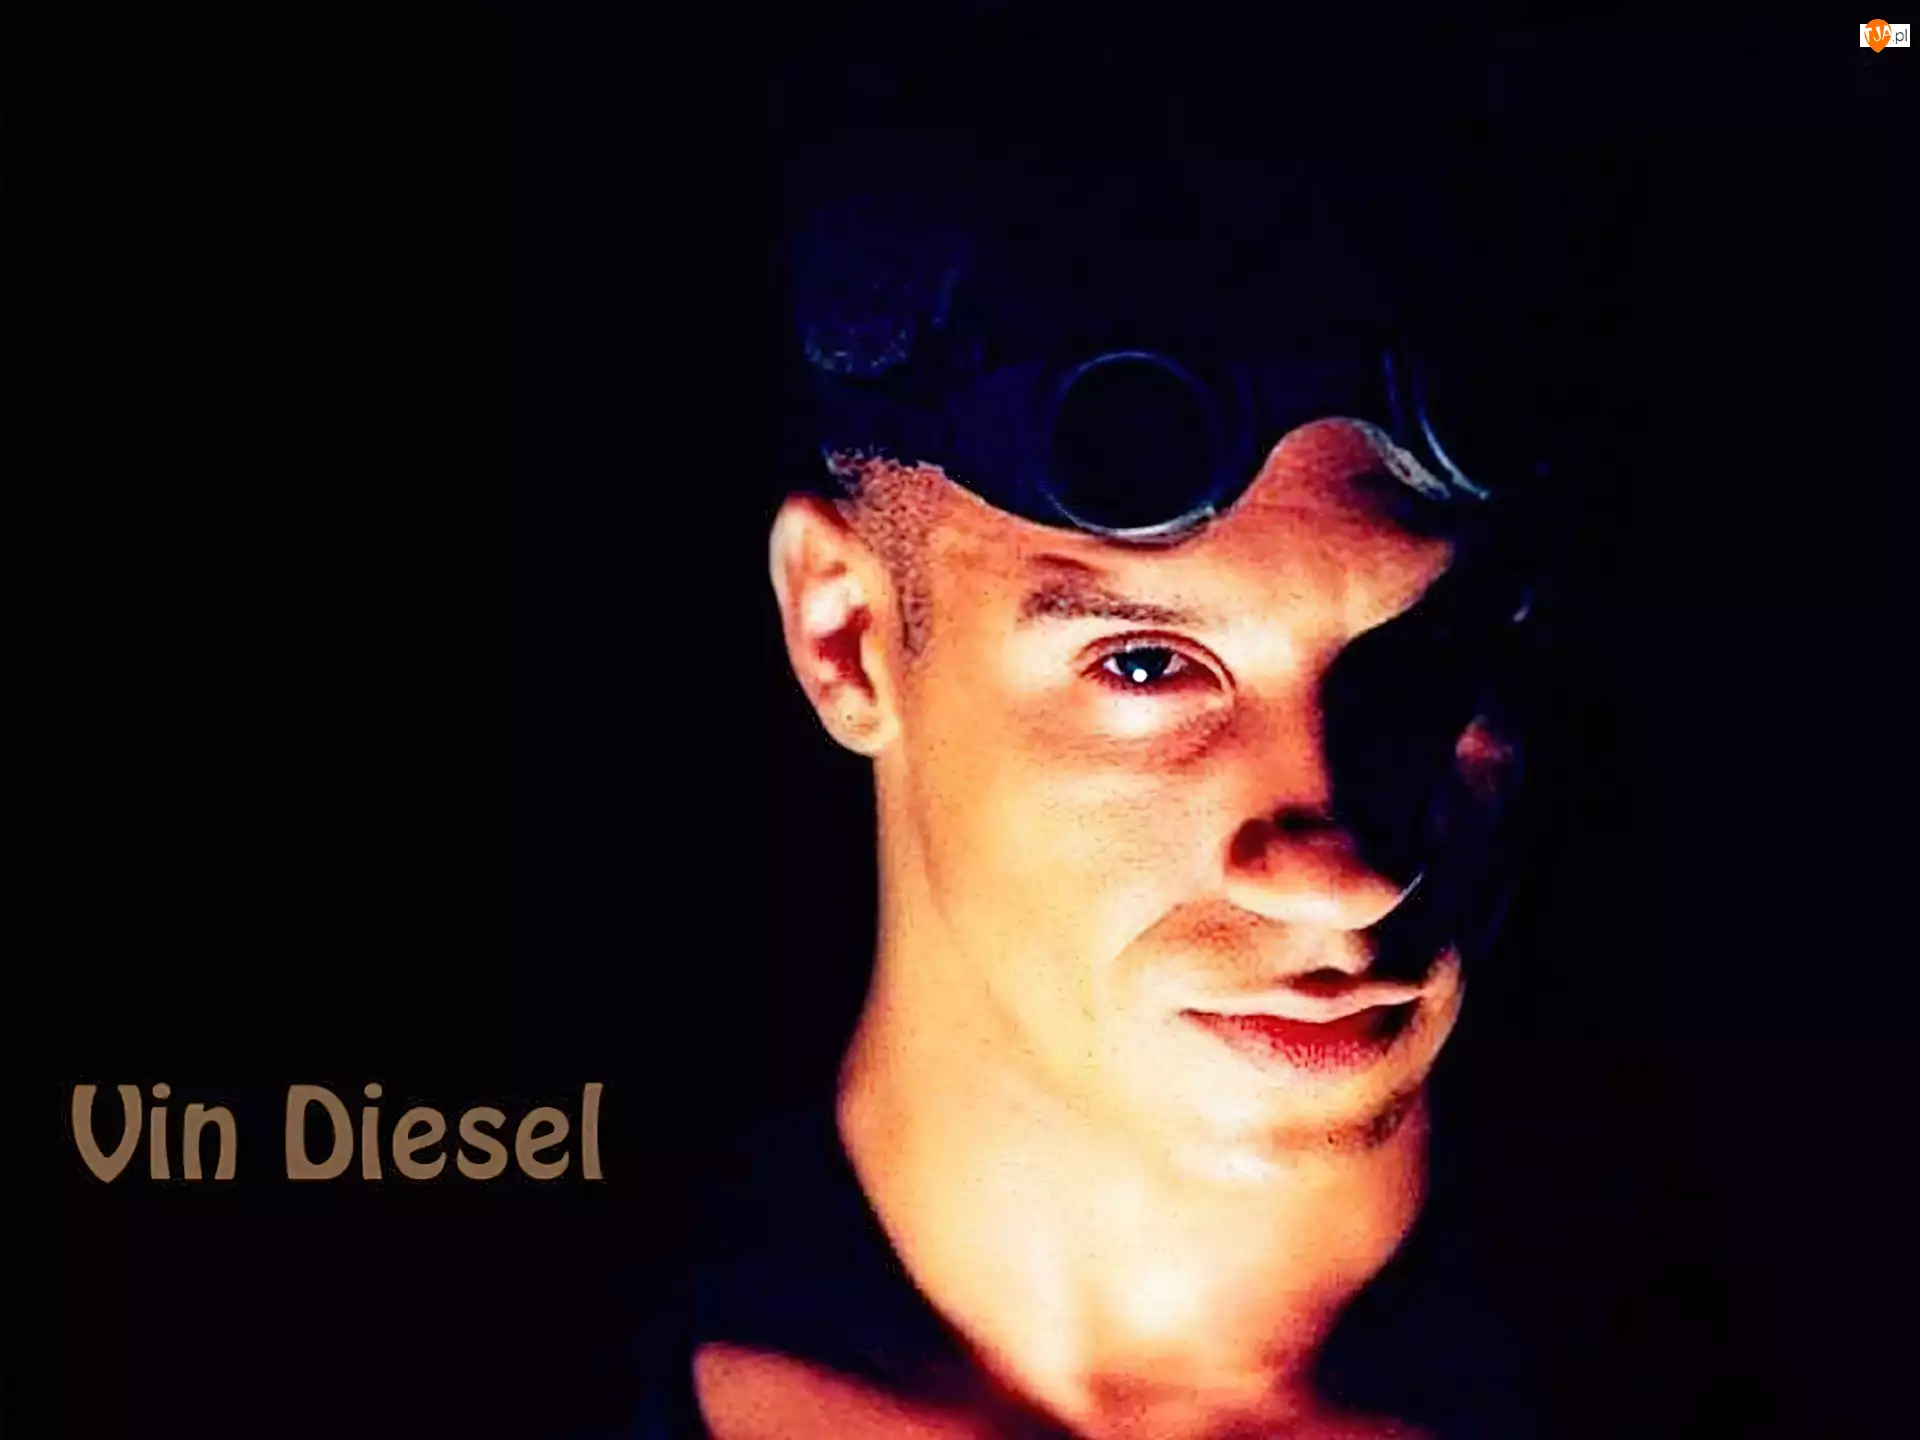 okularki, Vin Diesel